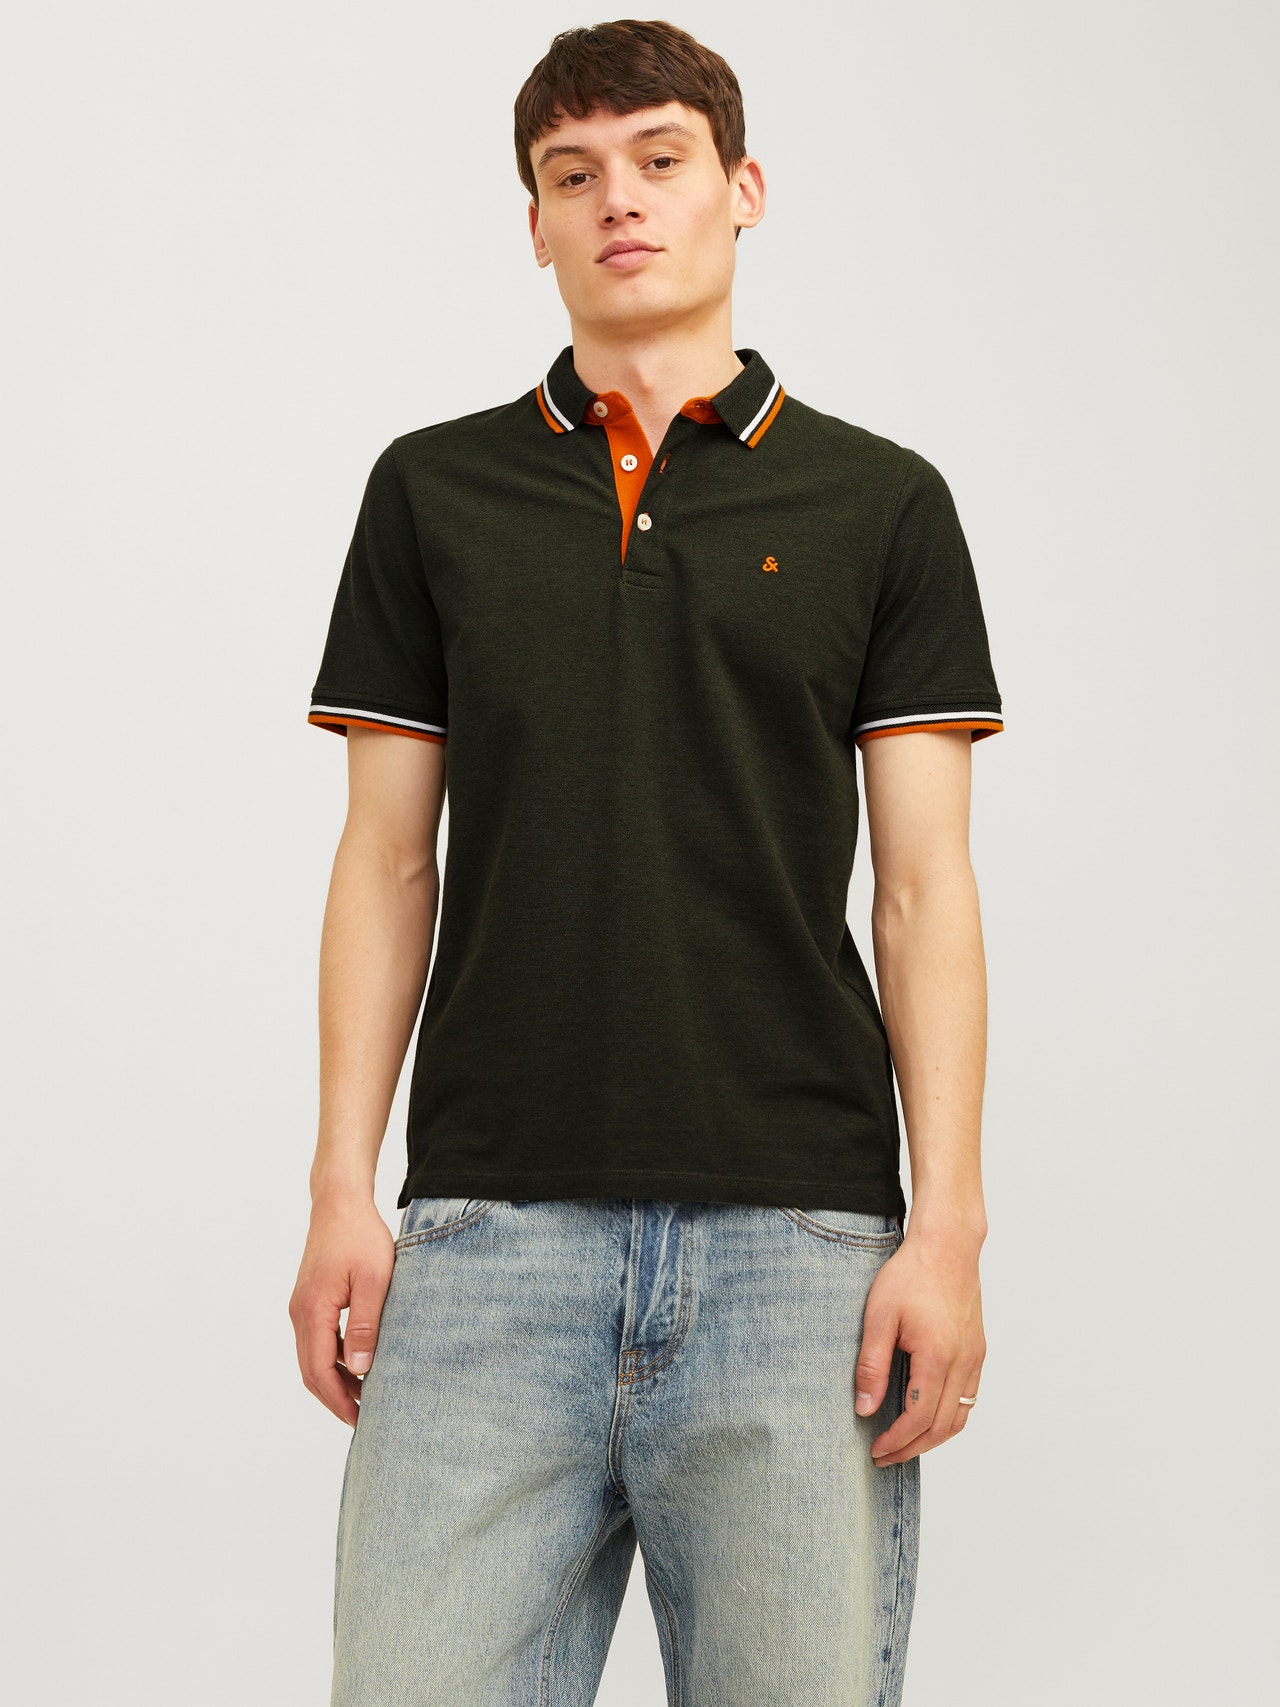 Jack & Jones Enfärgat Polo T-shirt -Kombu Green - 12136668